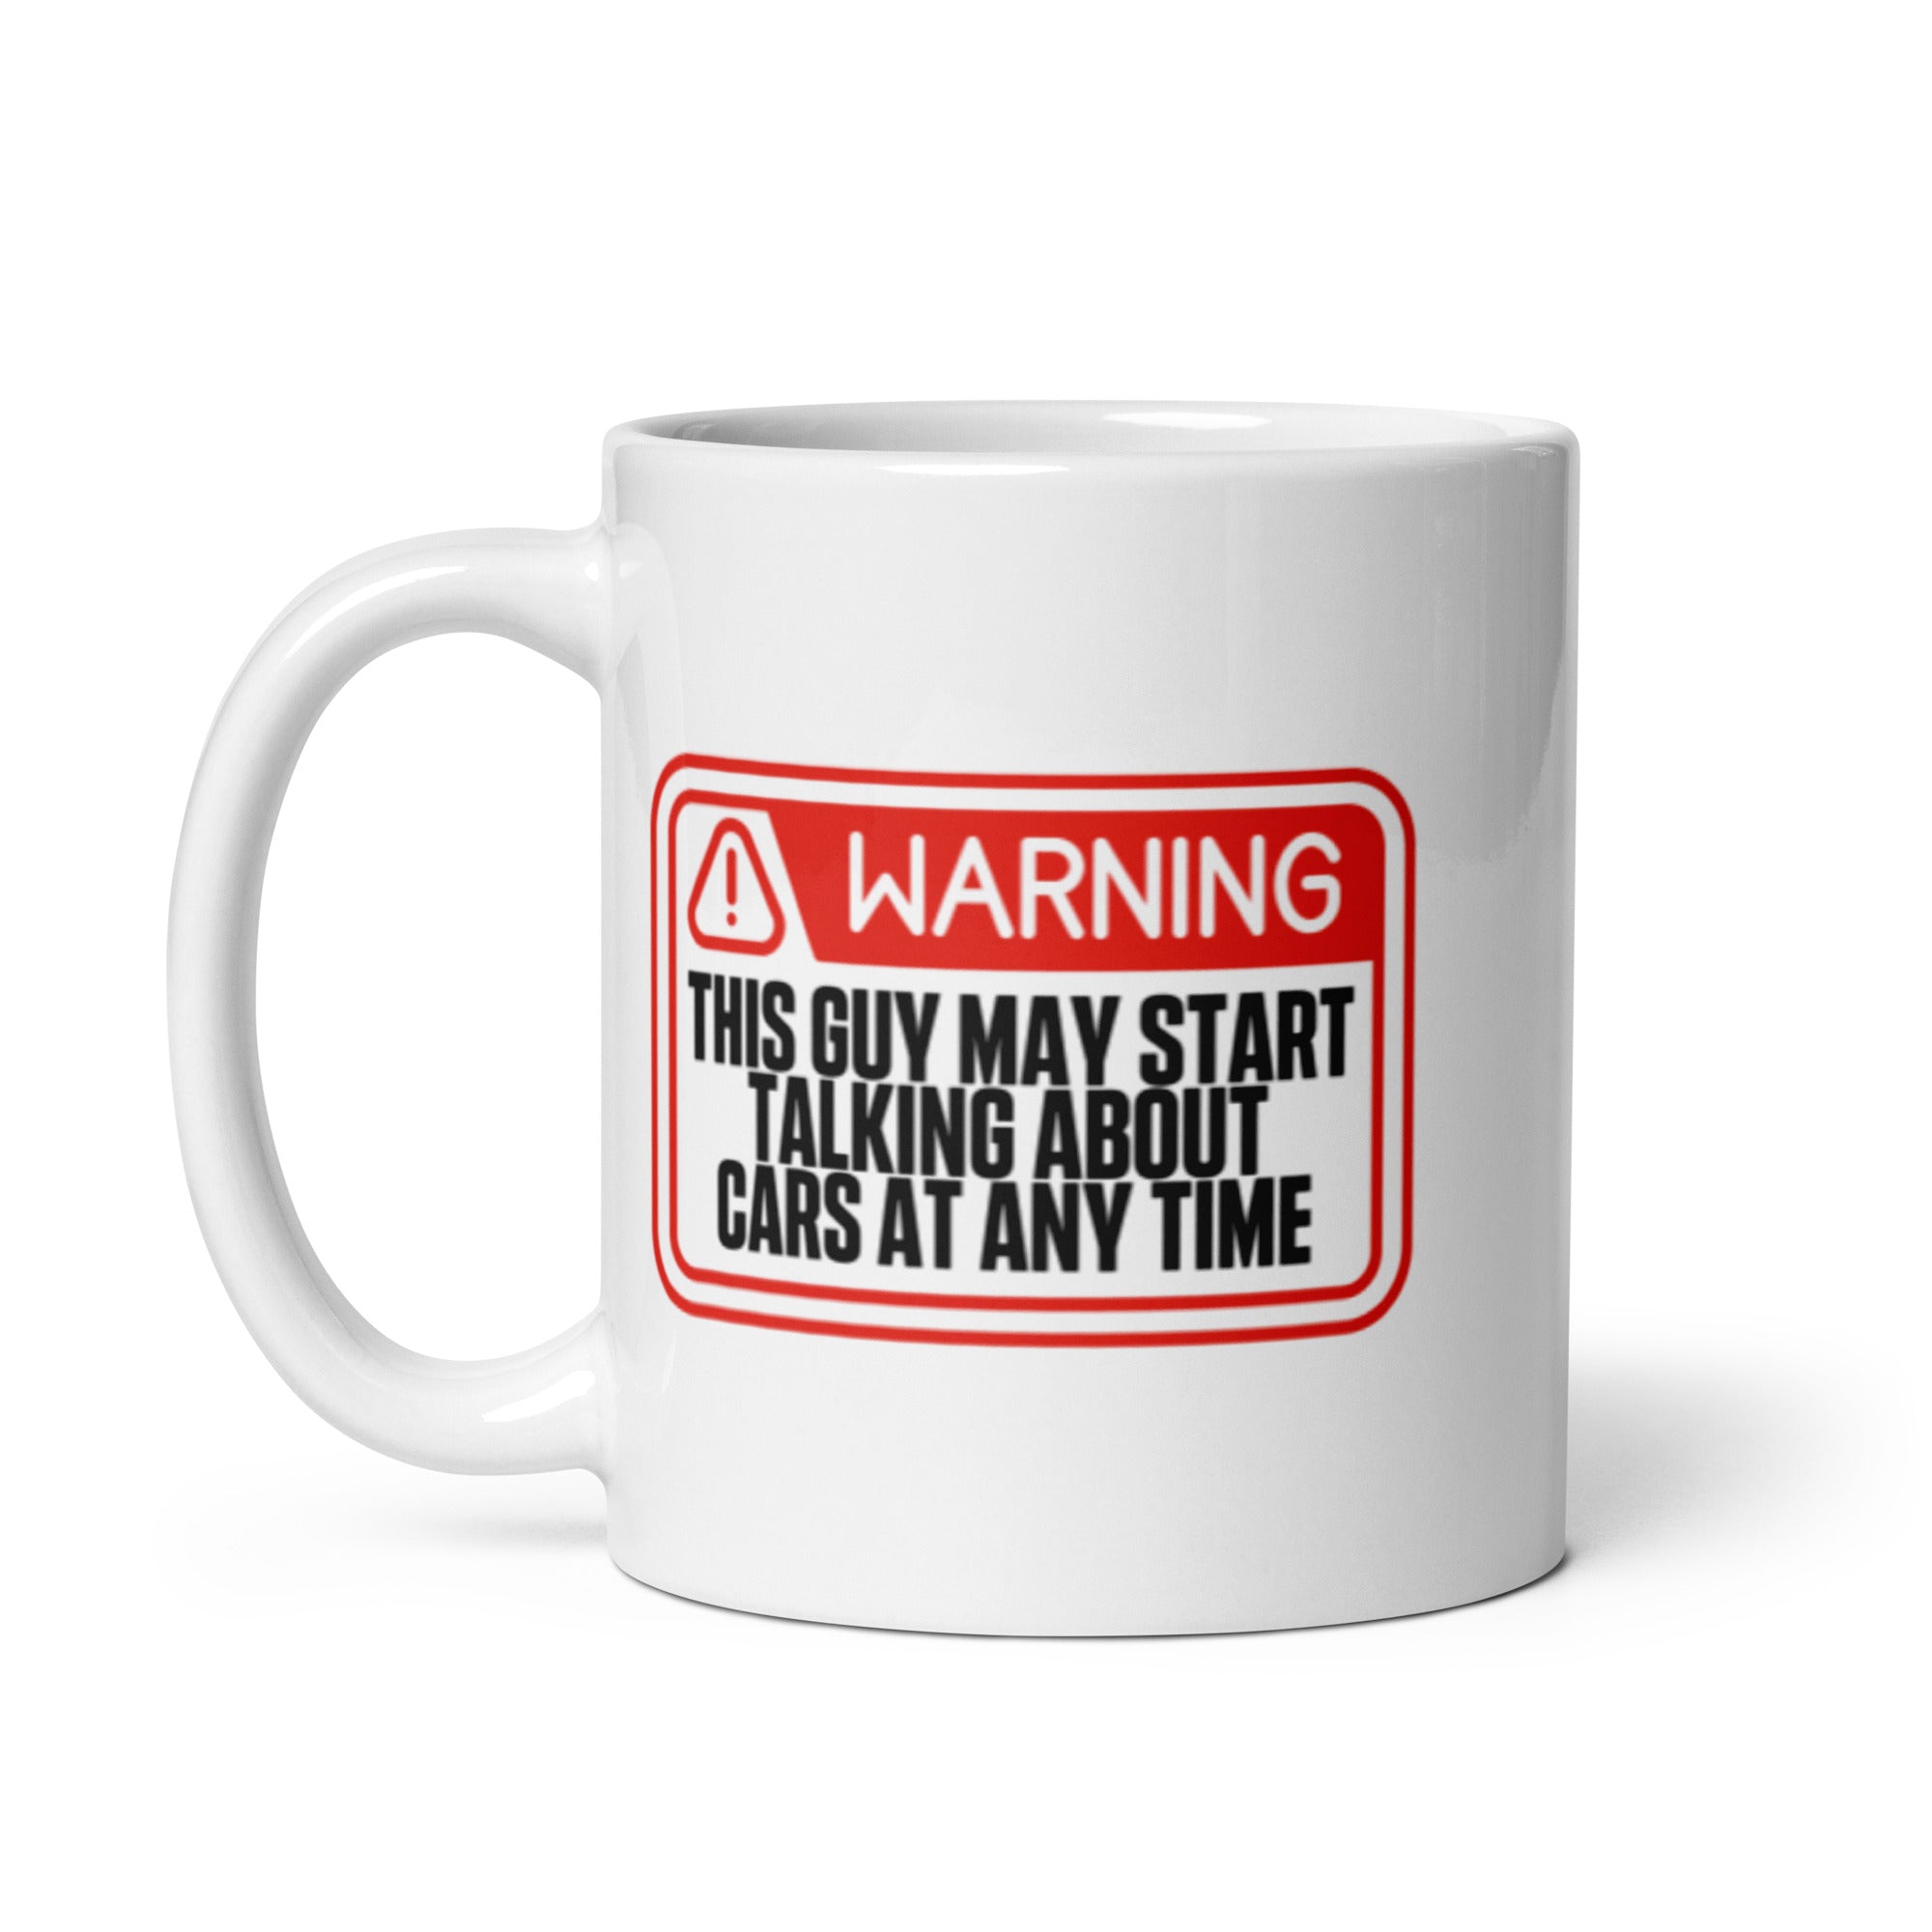 Warning - This Guy May Start Talking About Cars - Mug